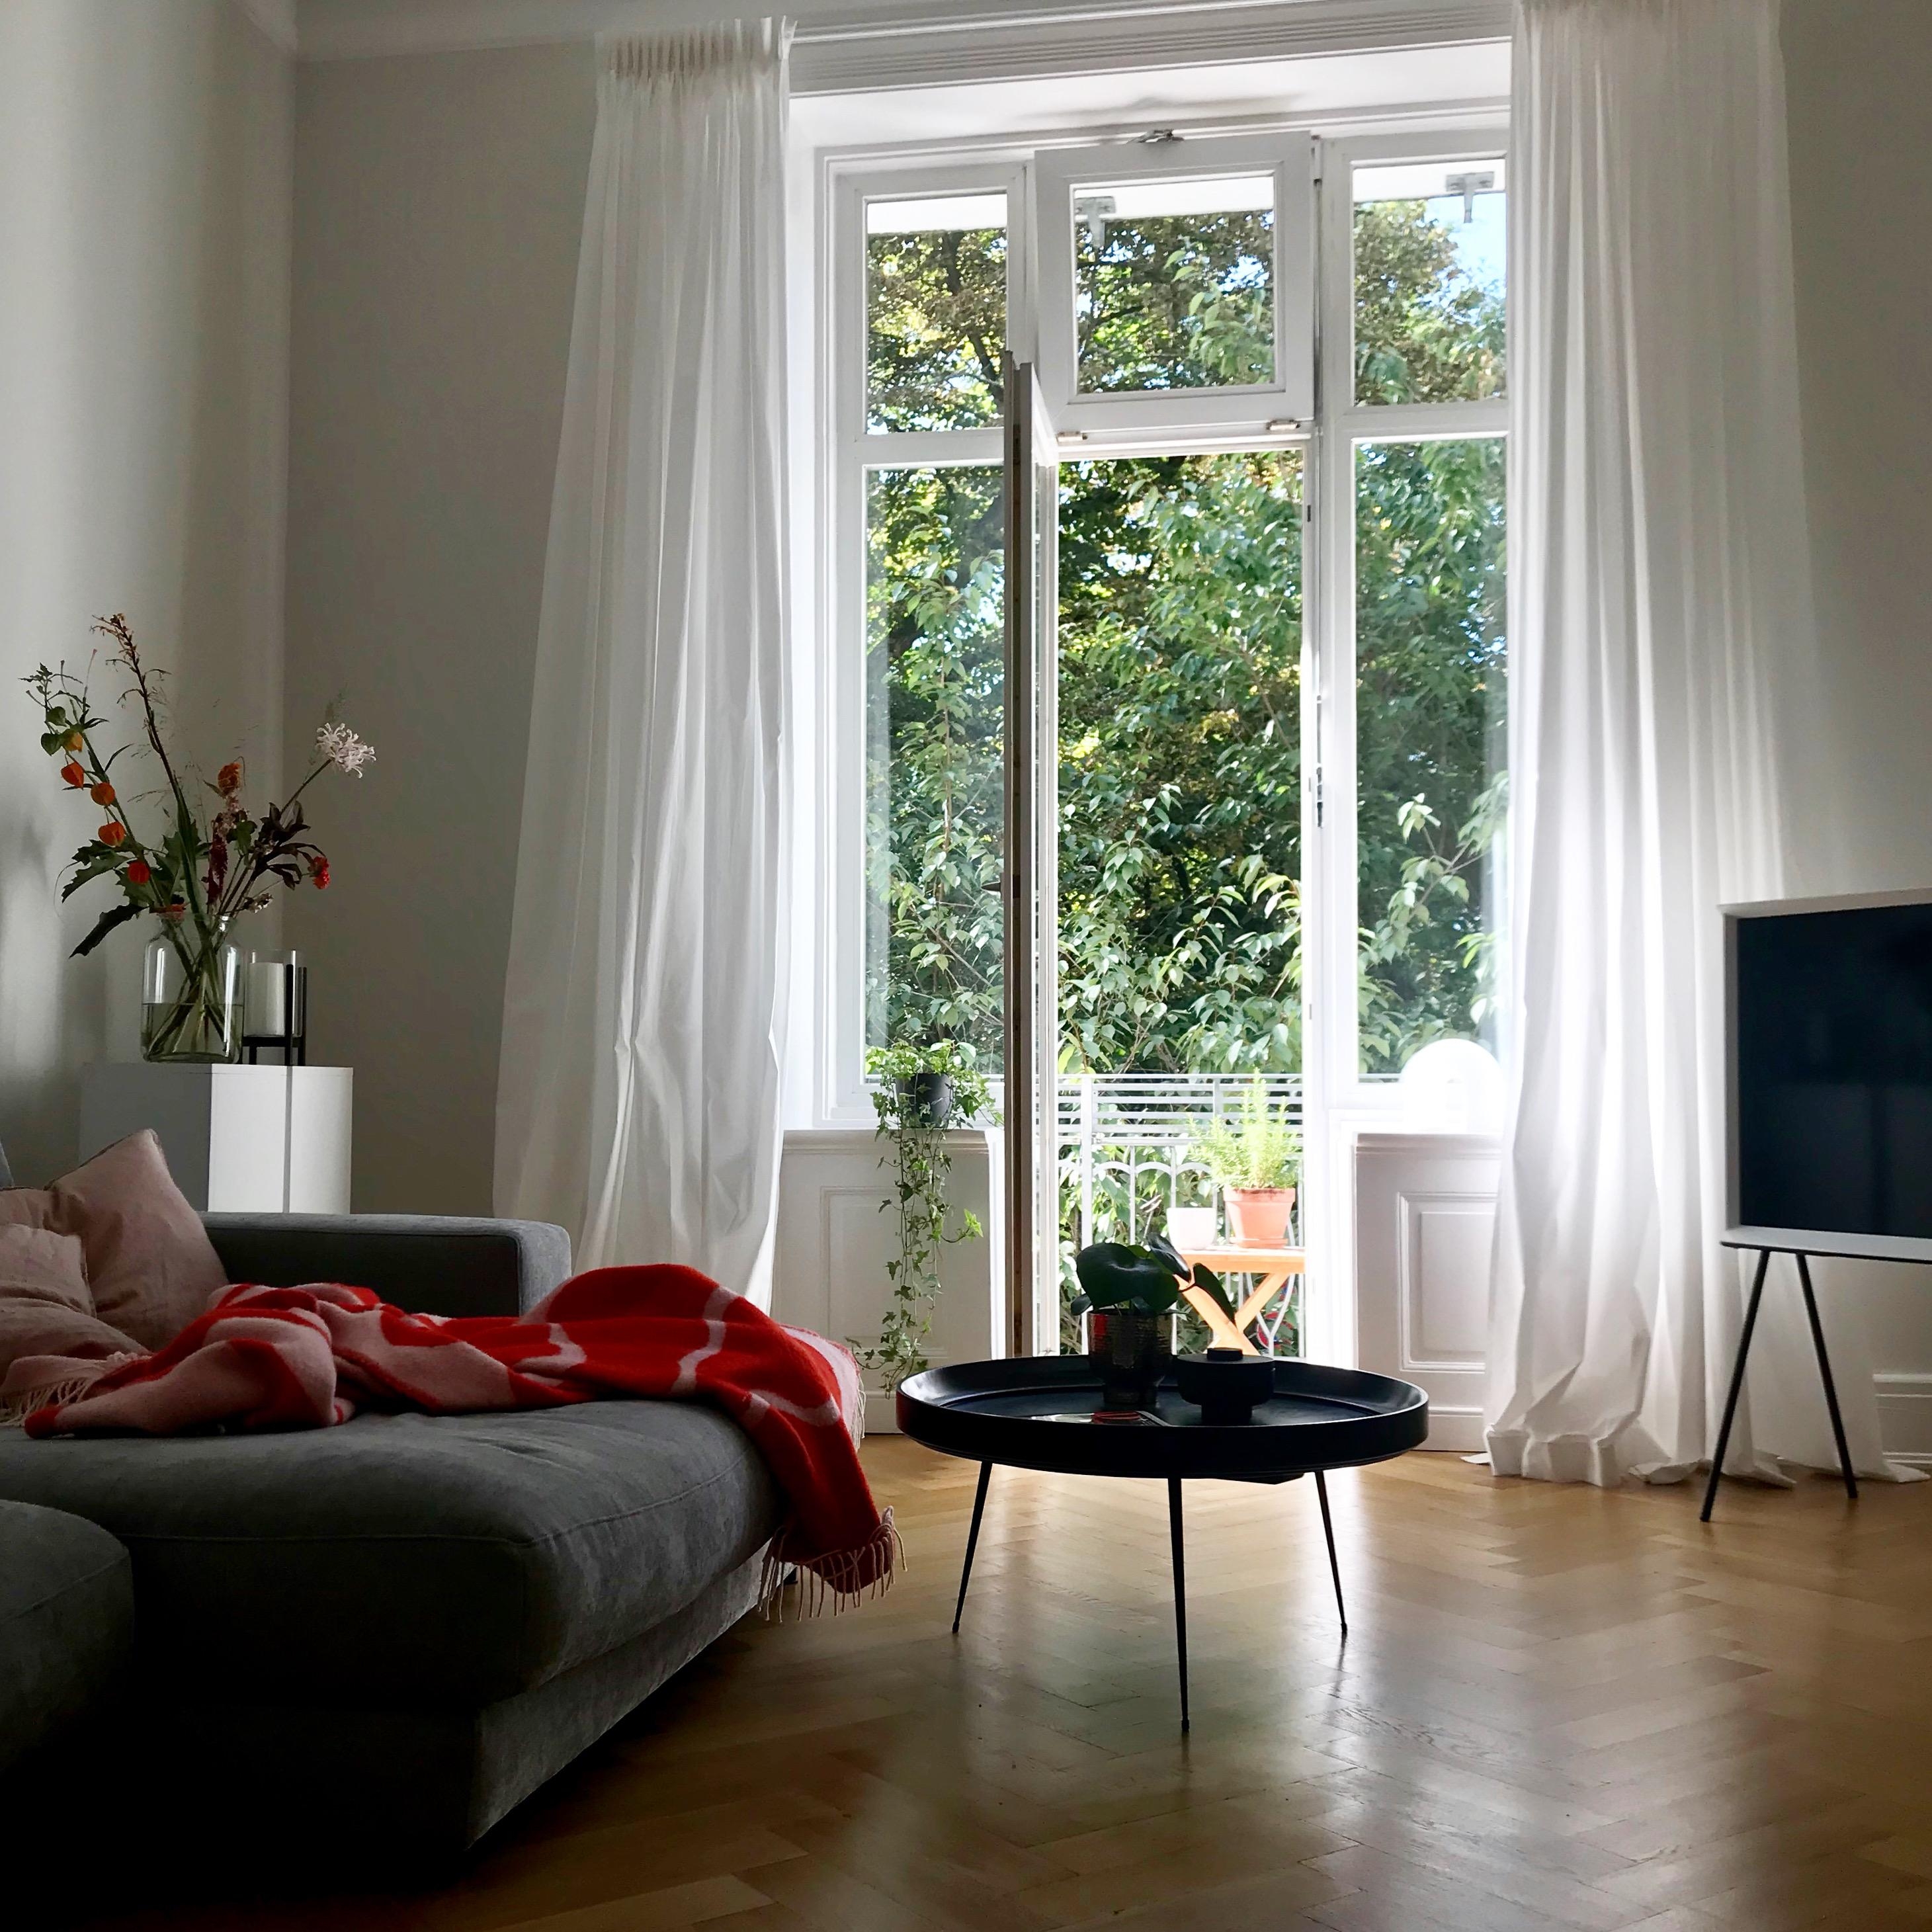 #wohnzimmer #living #wohnen #livingroom #couchliebt #couchstyle 